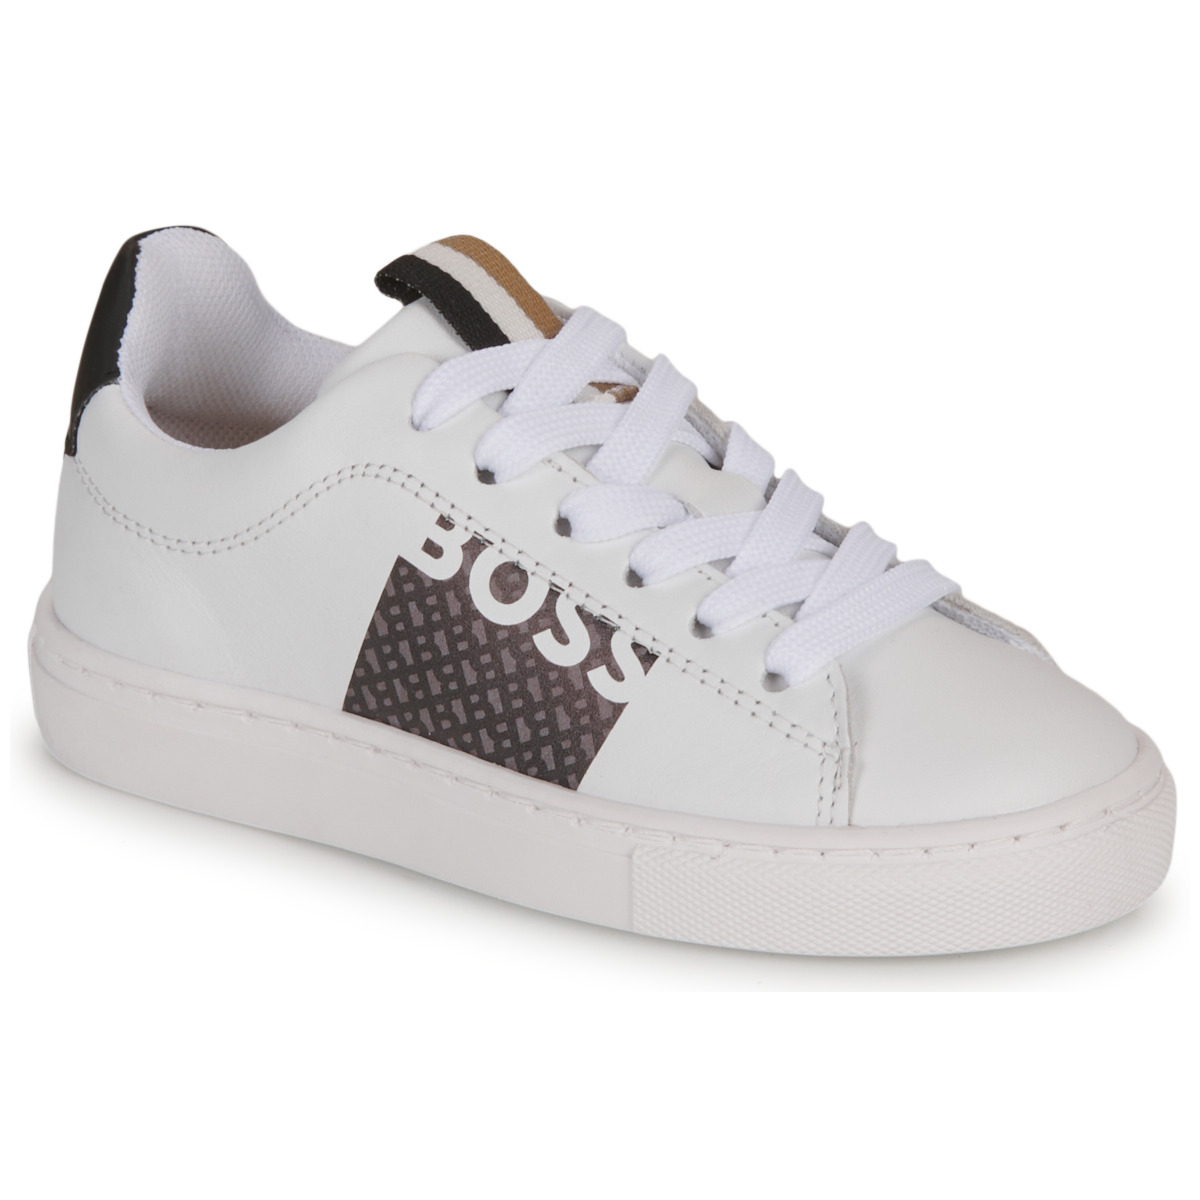 Cipők Fiú Rövid szárú edzőcipők BOSS J29350 Fehér